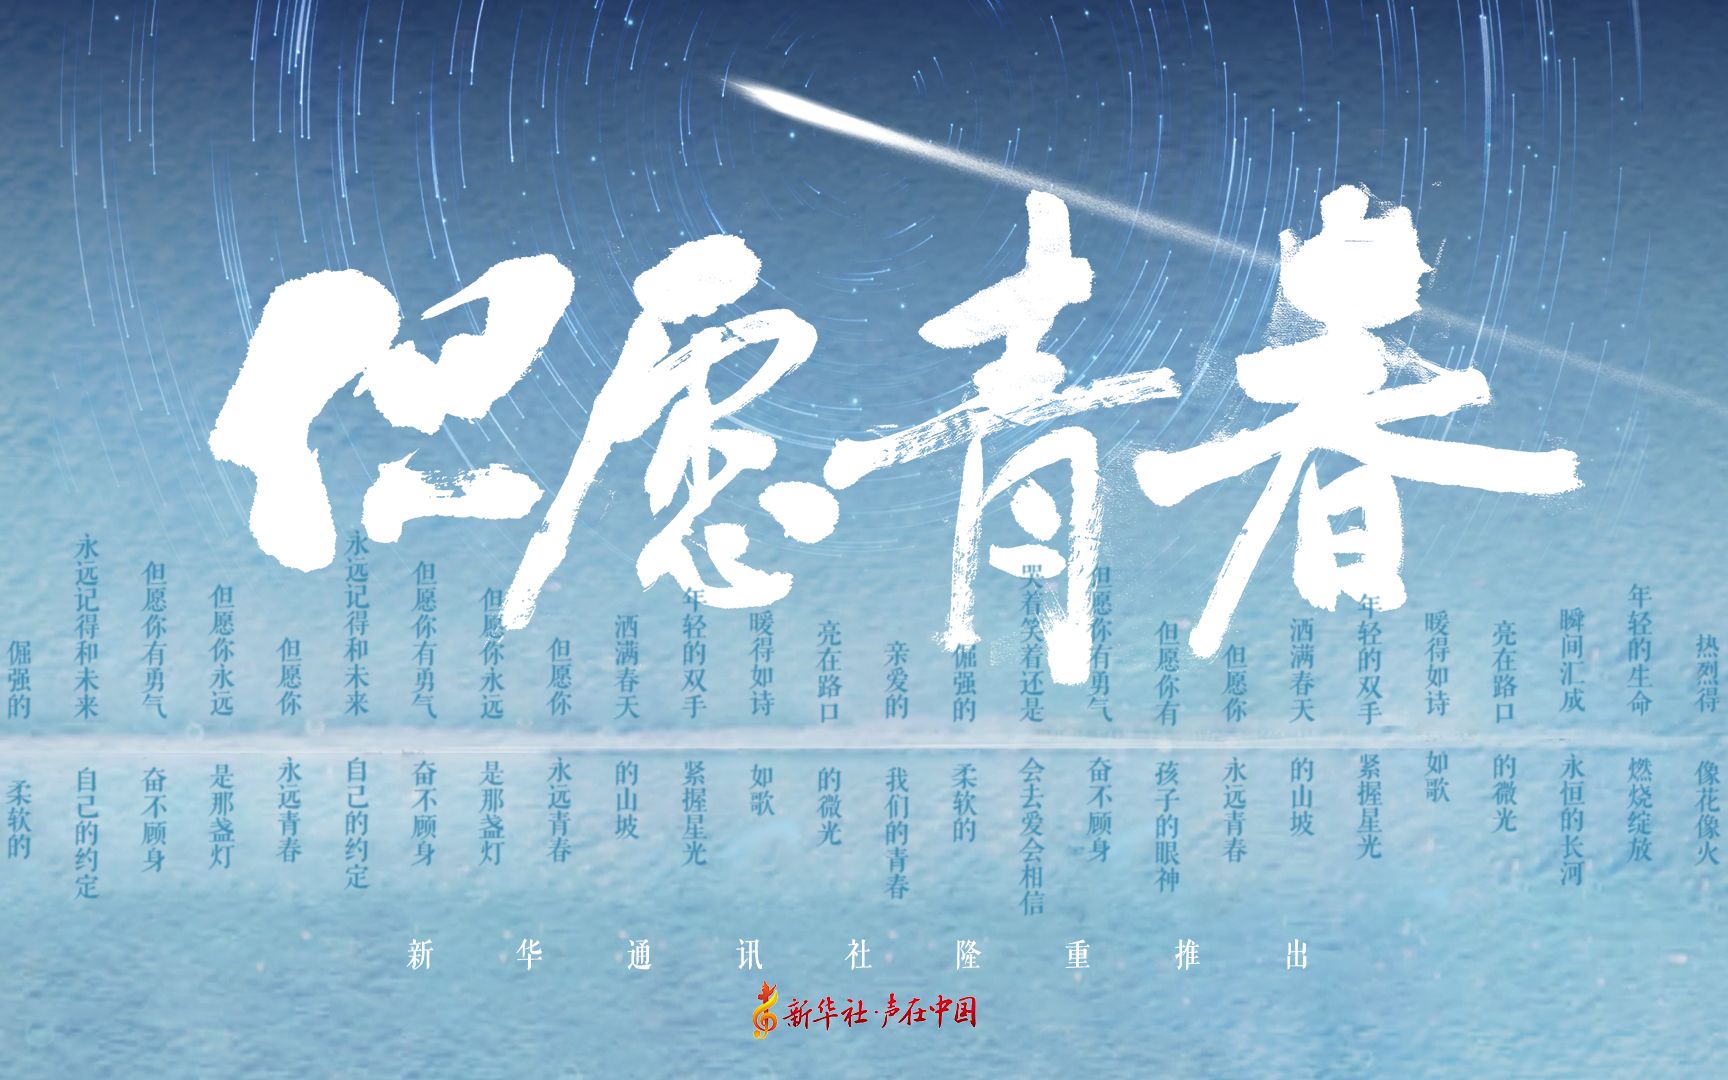 中国共产主义青年团成立100周年特别歌曲: 《但愿青春》